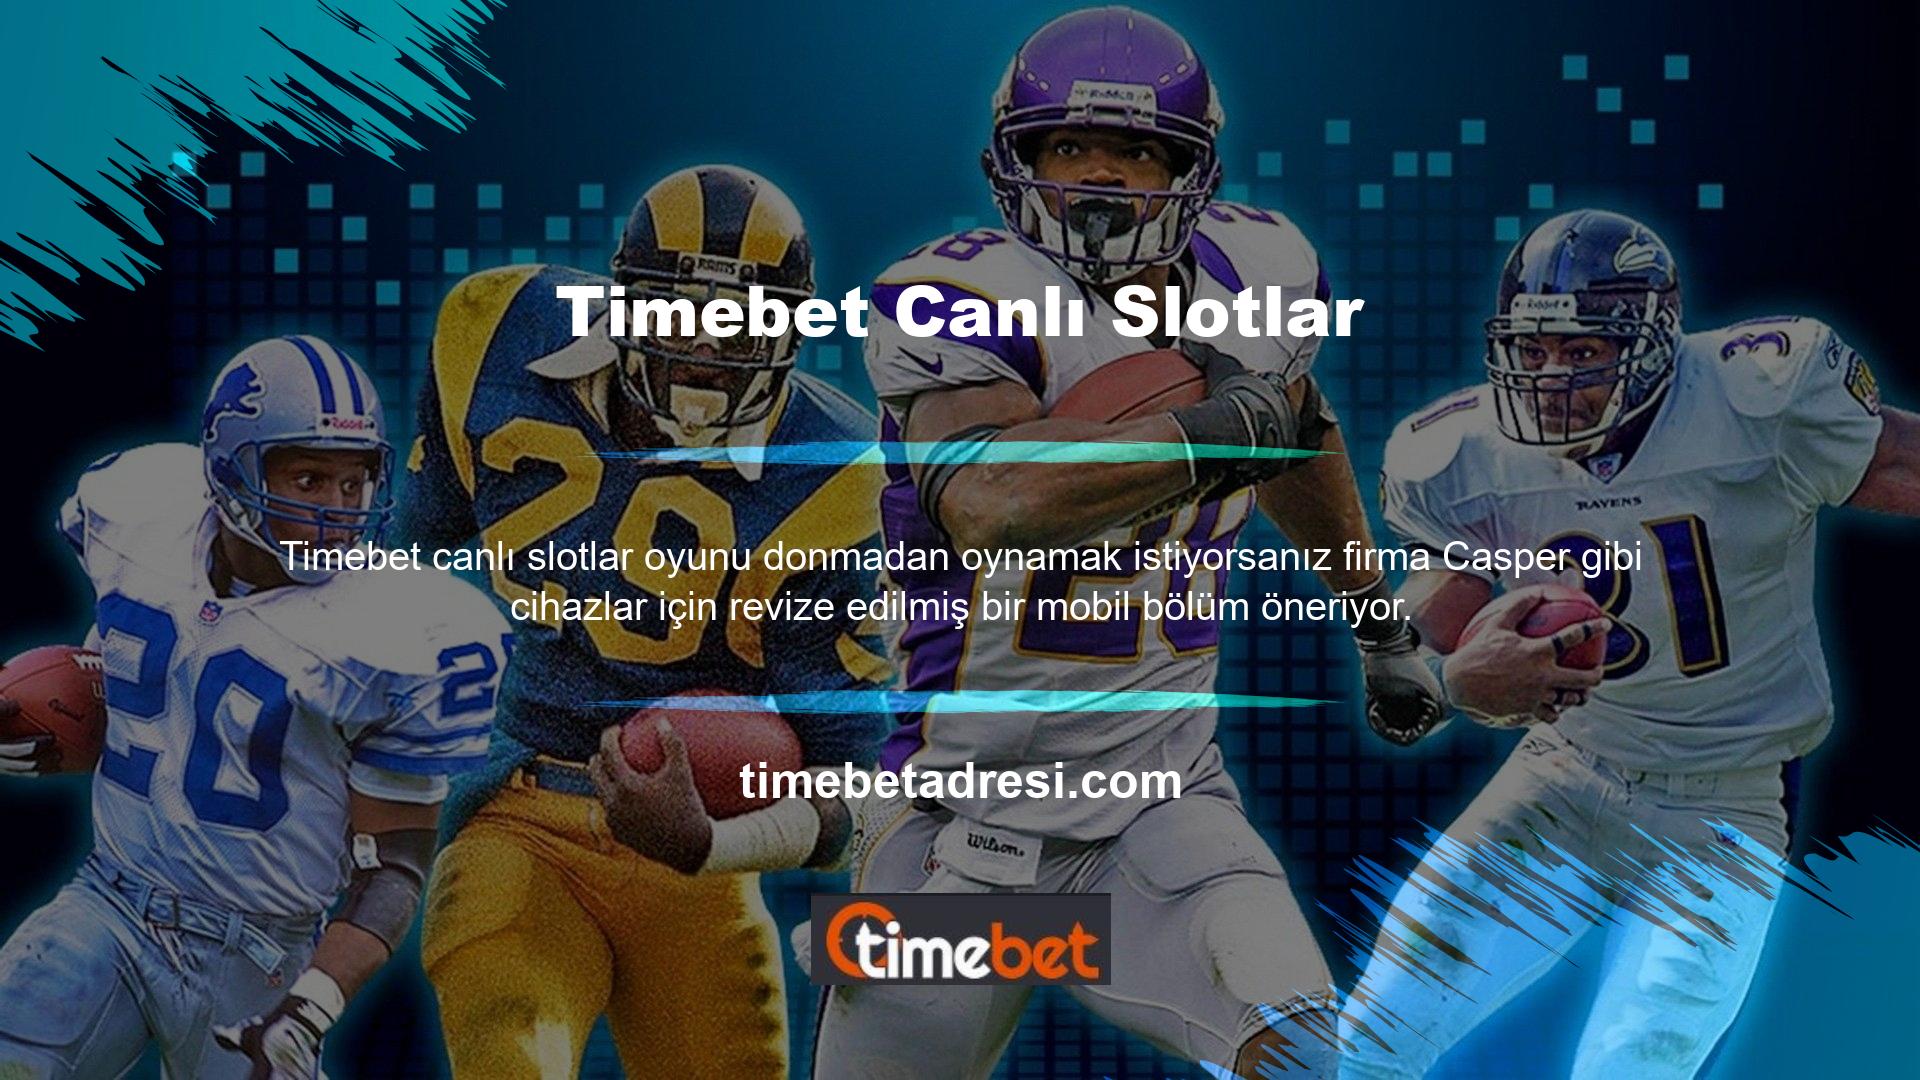 Timebet TV seçeneği ile Türkiye genelindeki tüm spor müsabakalarını harçlık bırakmadan izleyebilirsiniz